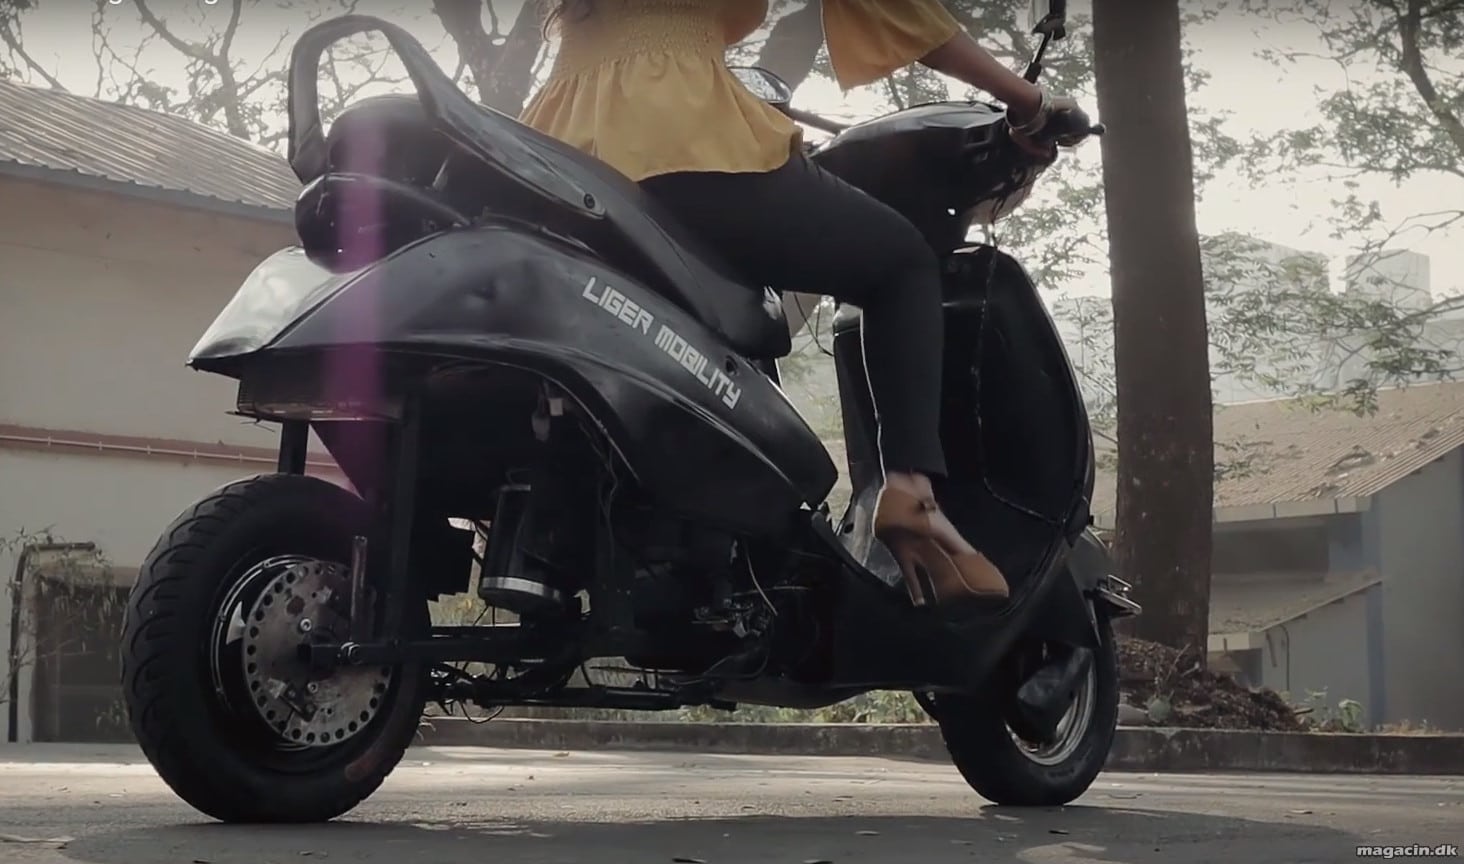 Prototype: Billig scooter holder selv balancen